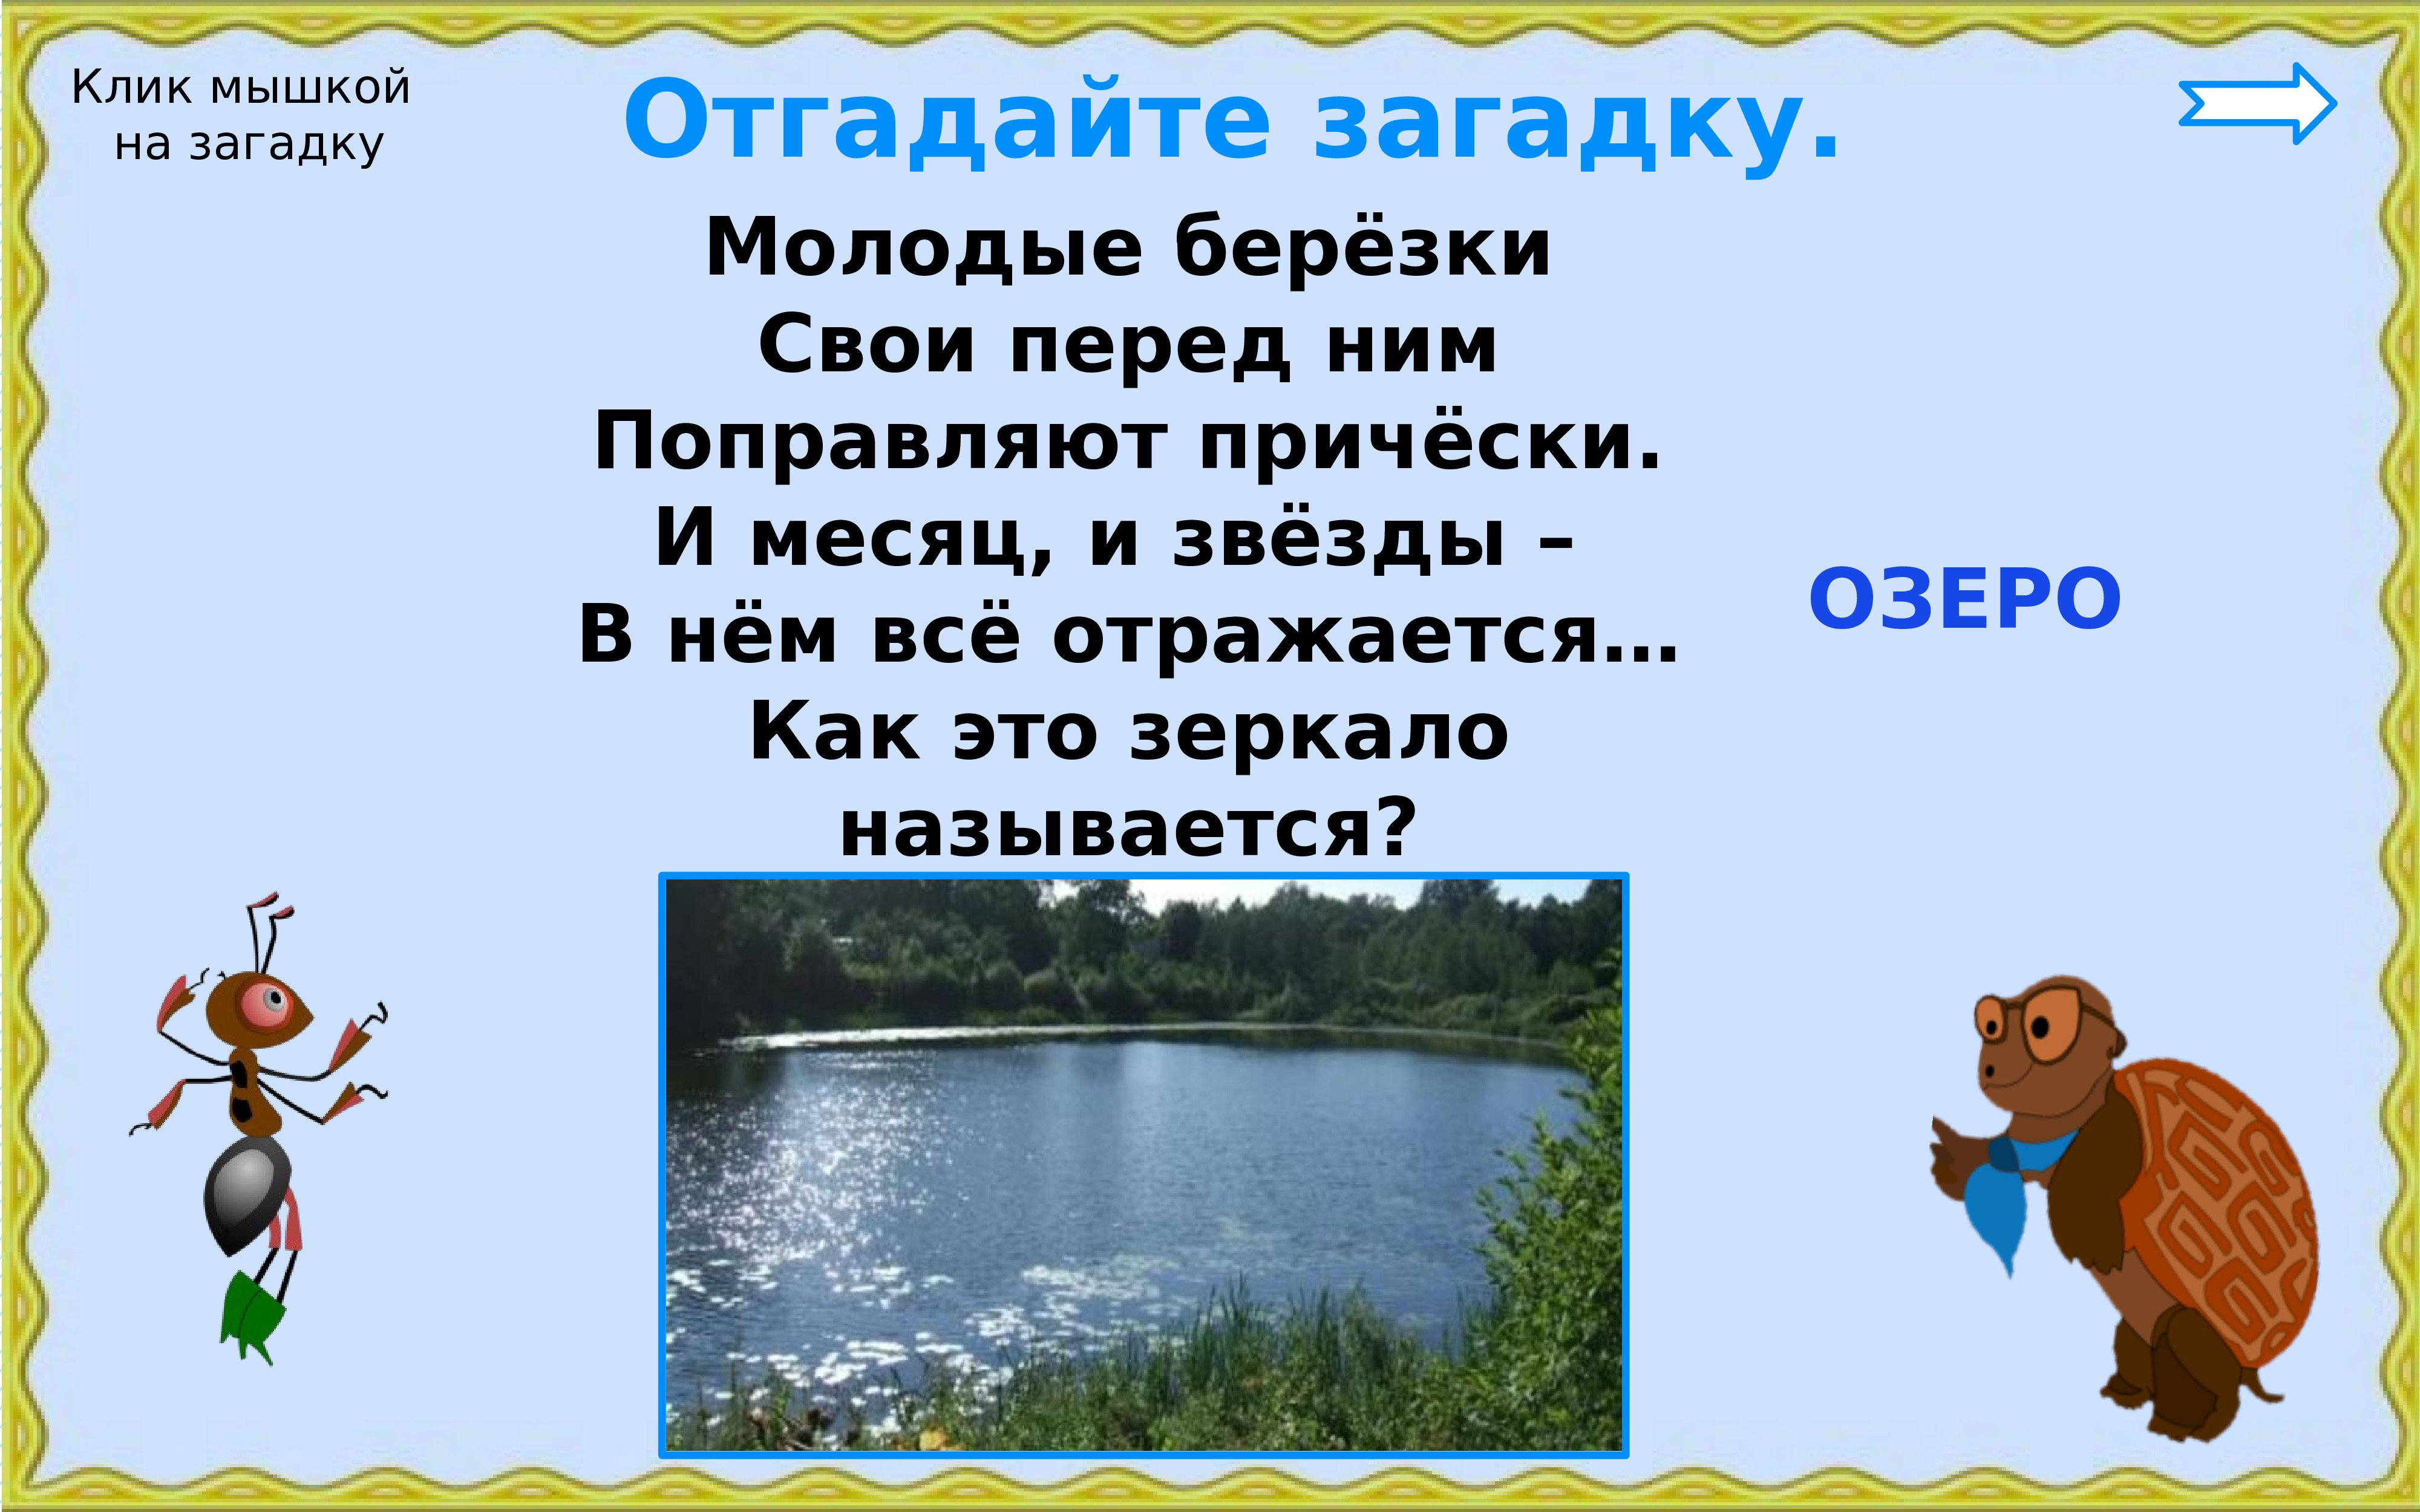 Водные богатства ульяновской области. Загадки об Озерах. Загадка про озеро. Загадки о водных богатствах. Загадка про озеро для детей.